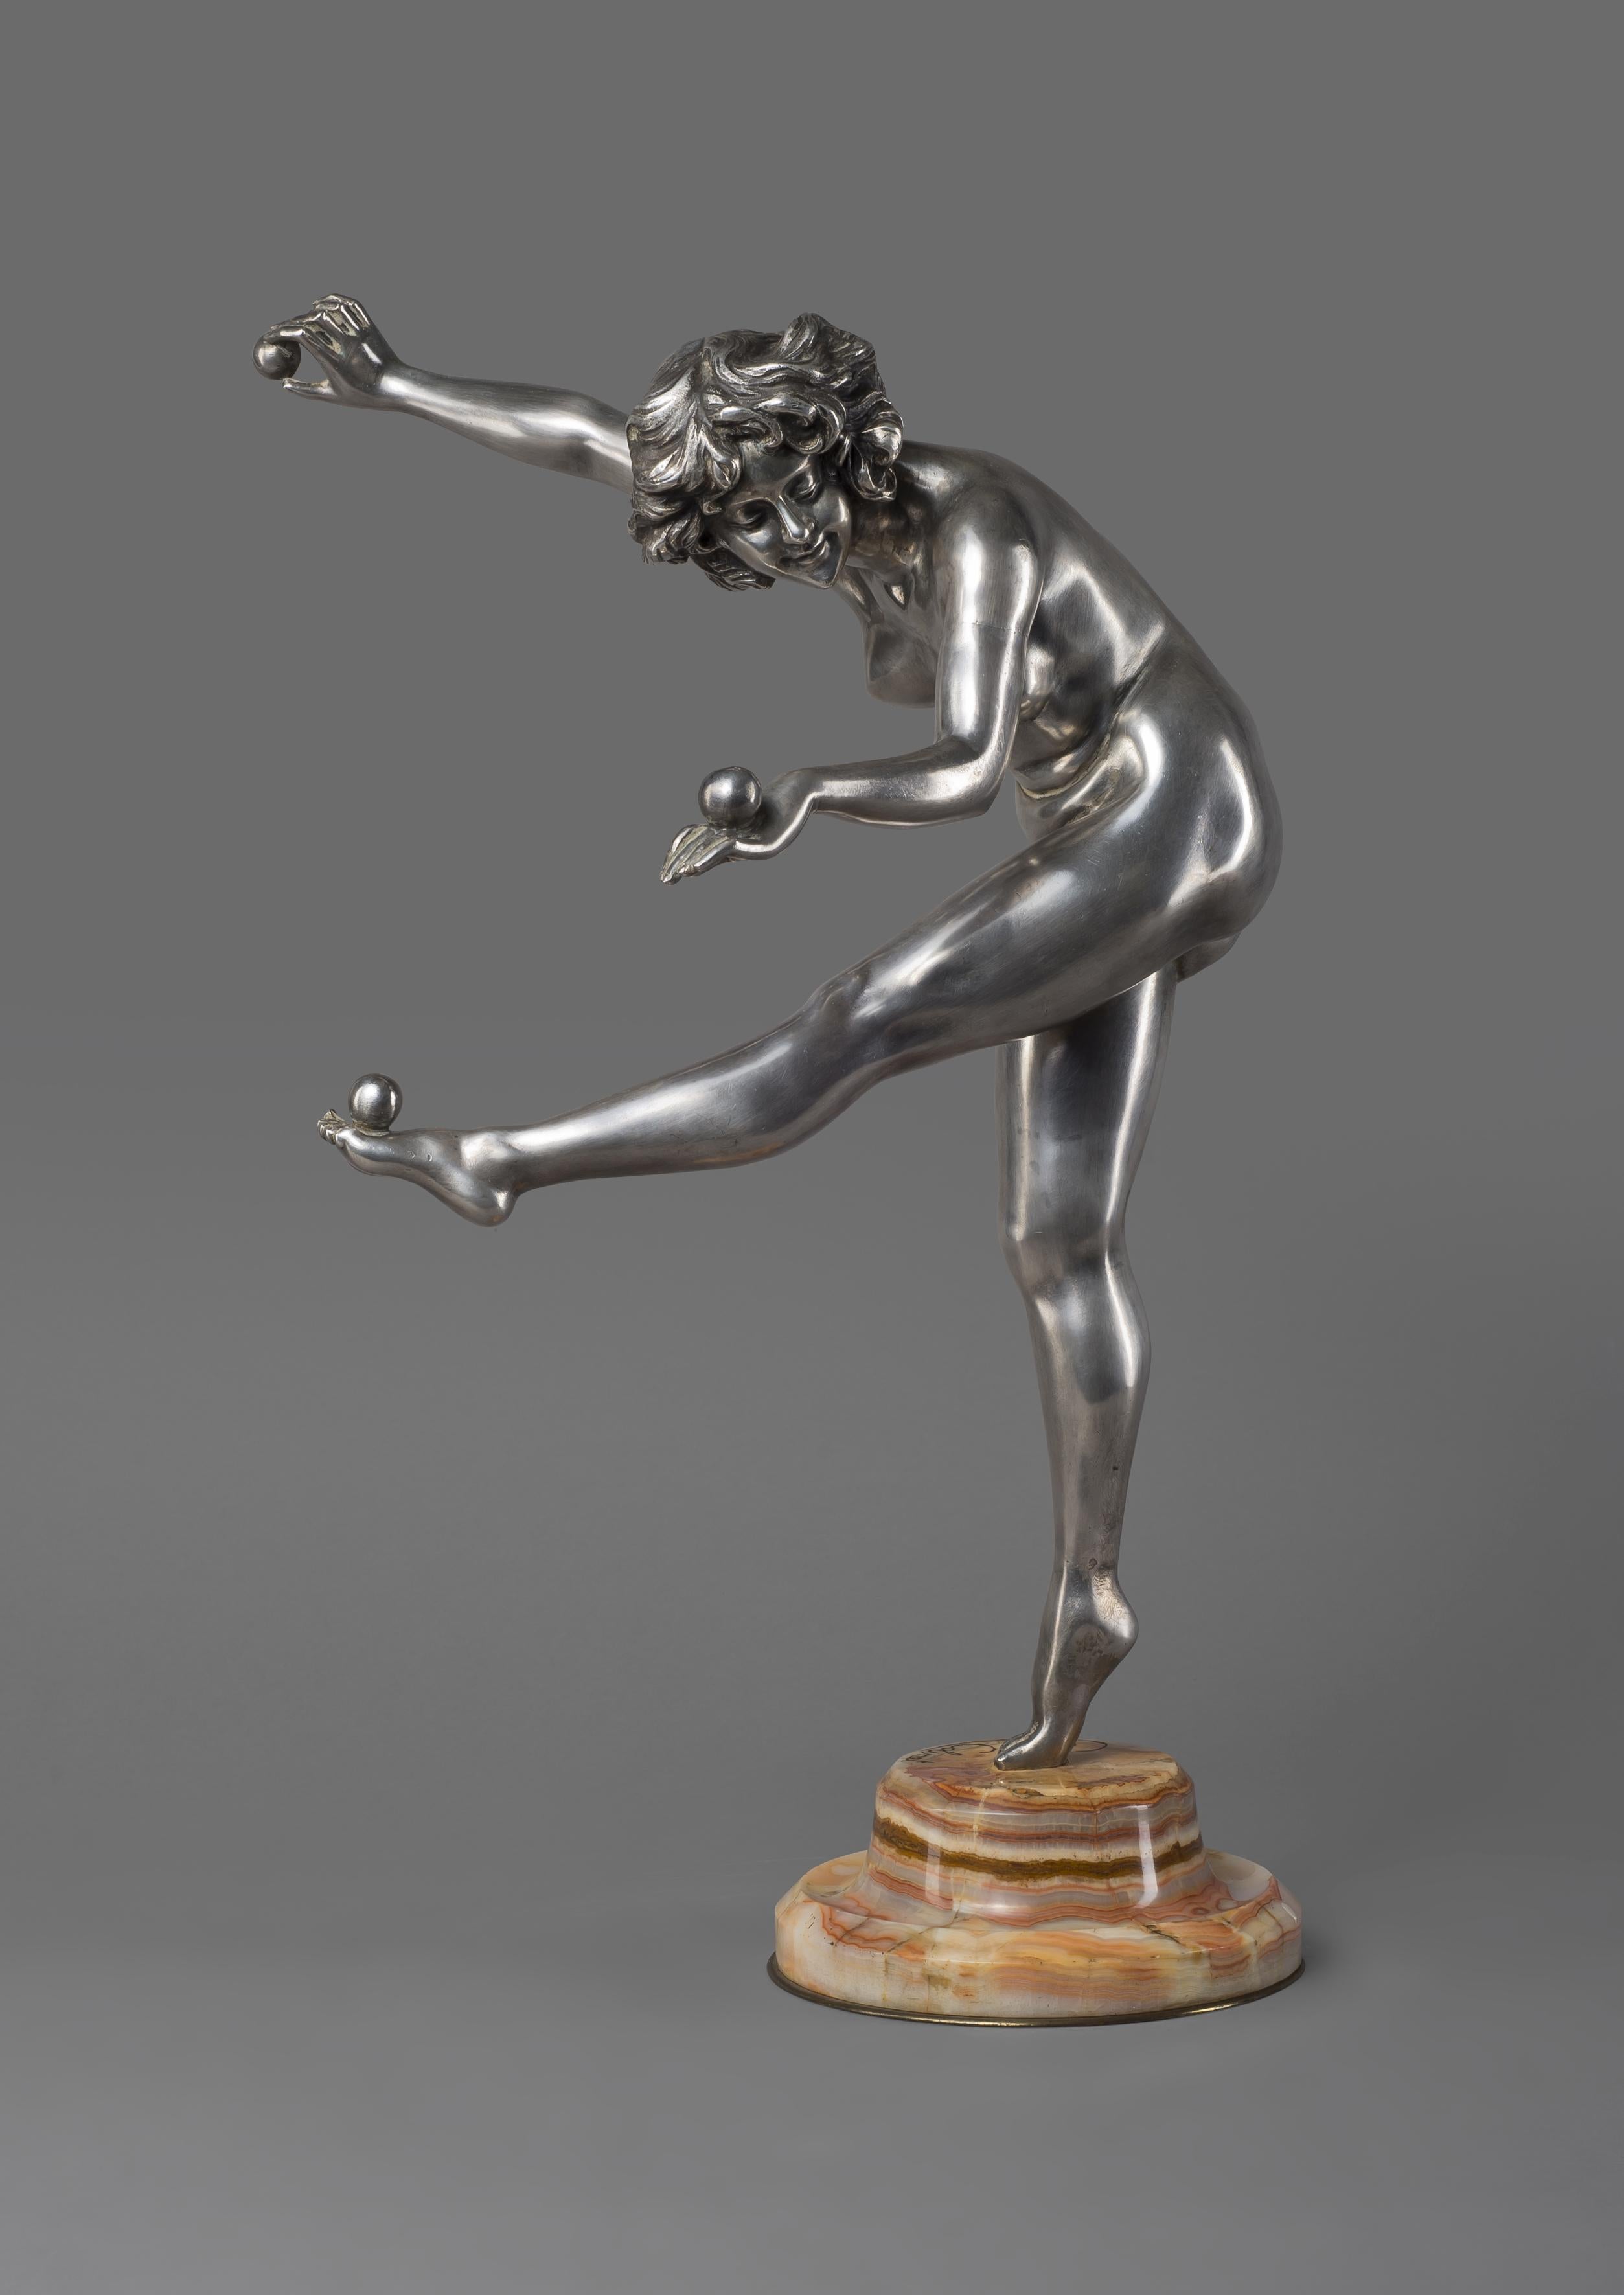 Le jongleur - Un beau bronze argenté Art Déco, par Claire J.R. Colinet. 

Français, vers 1925. 

Gravé sur la base 